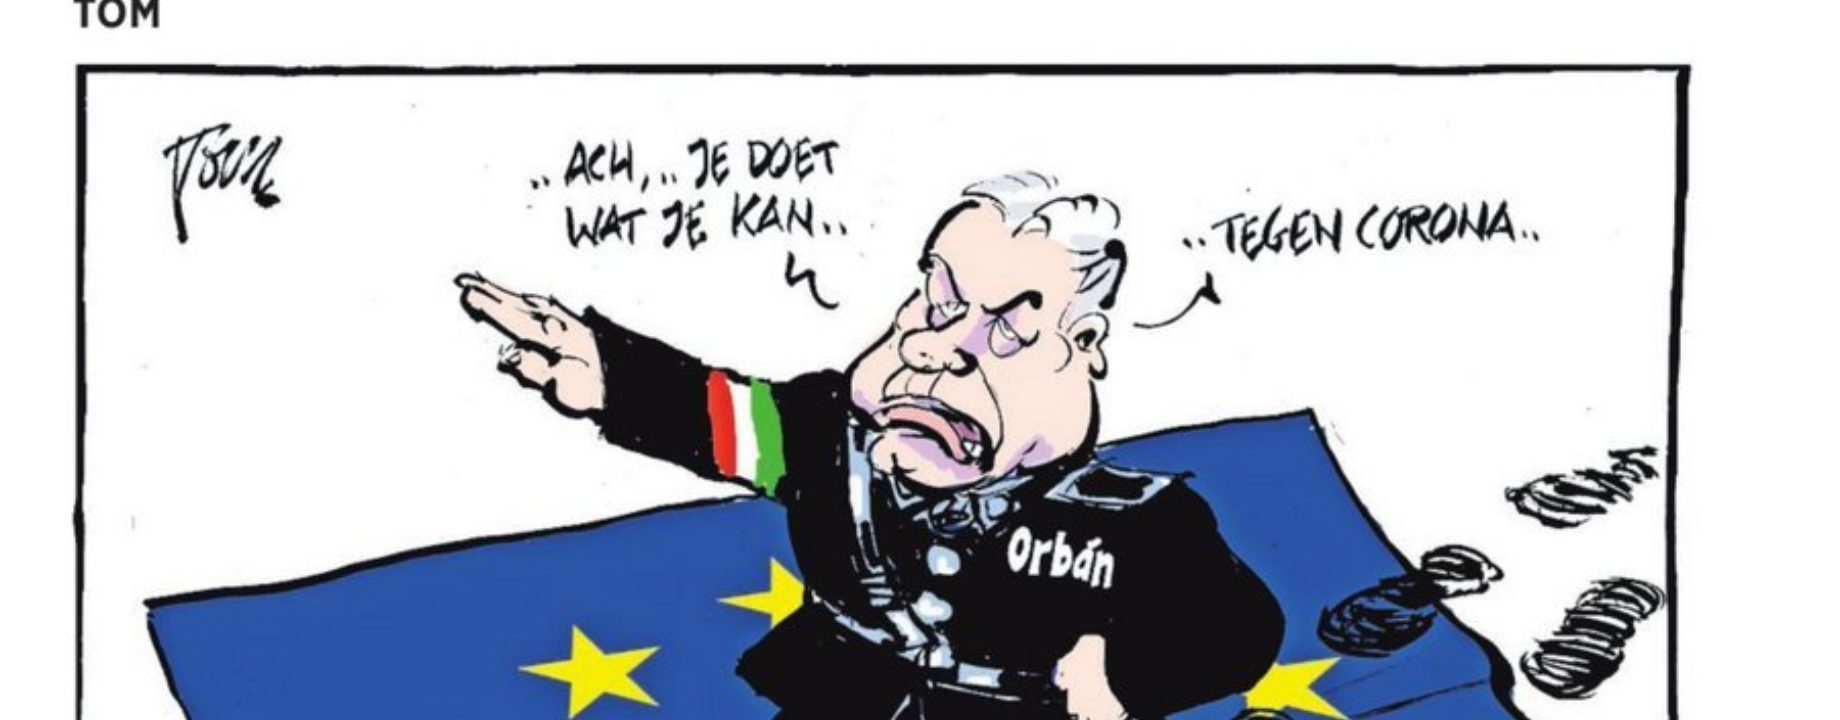 Orbán diktátor